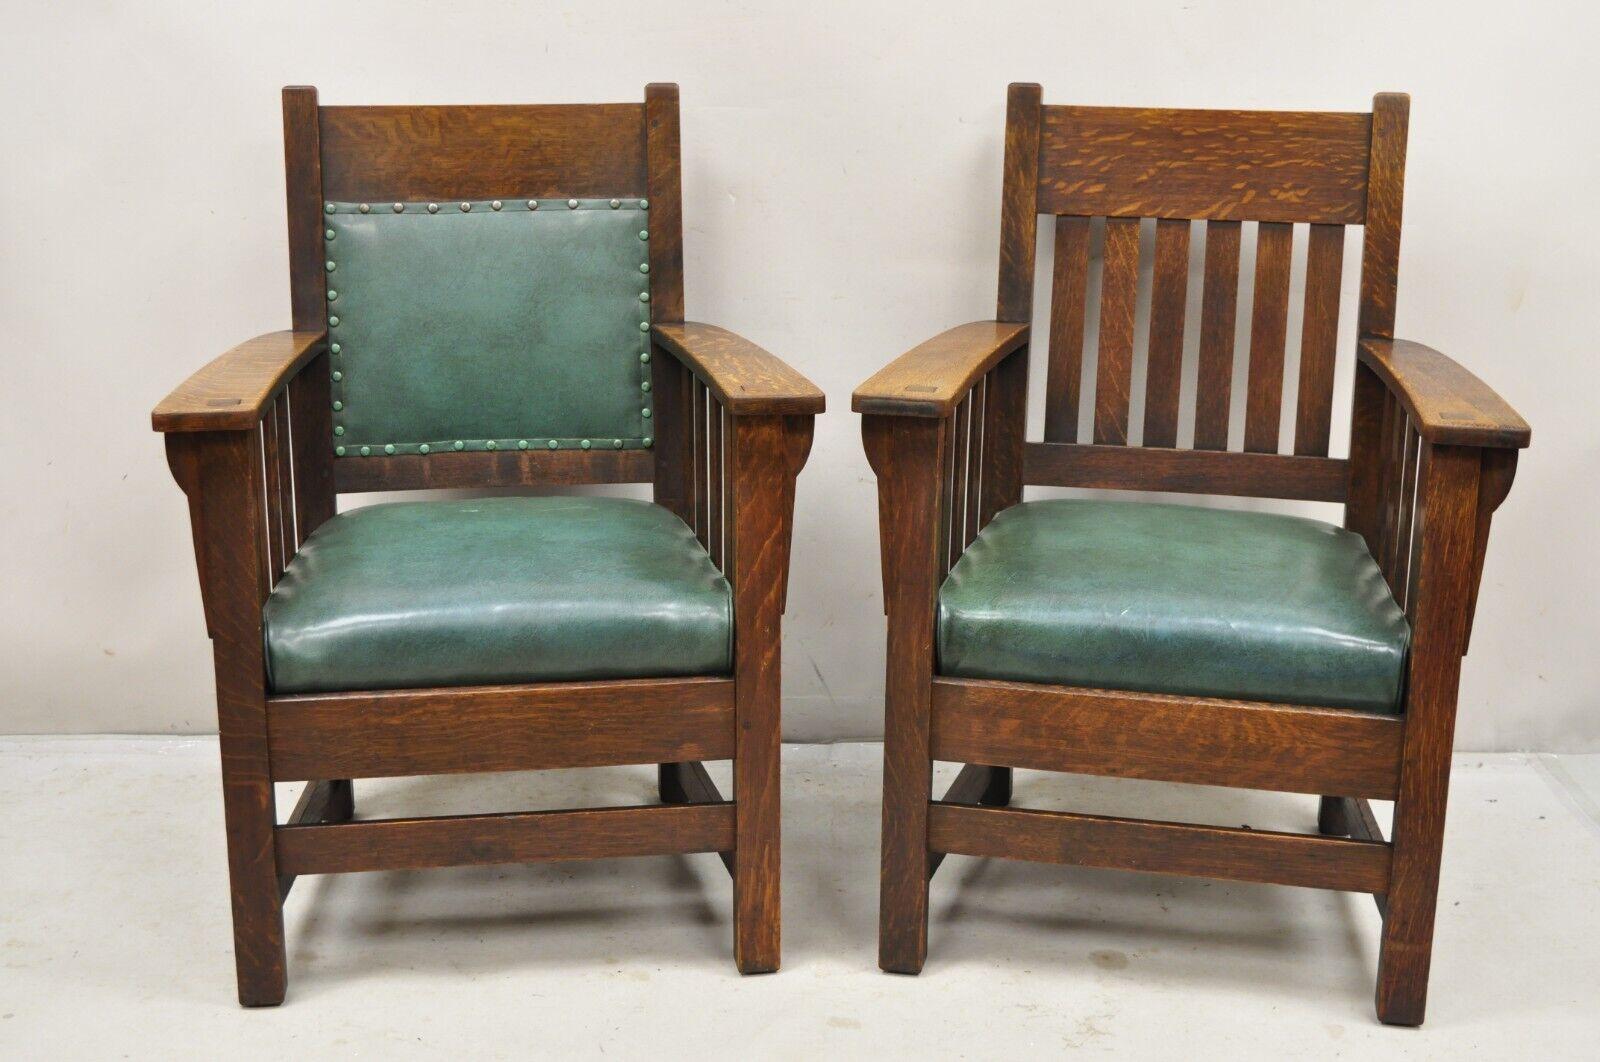 Antike Mission Eiche Arts & Crafts Stickley JM Young Style Lounge Sessel Grün - Paar. Artikel verfügt über Schlitz und Zapfenverbindungen, schöne Viertel gesägt Eichenholz, original grün Naugahyde Federkissen, sehr schöne antike Paar. Möglicherweise